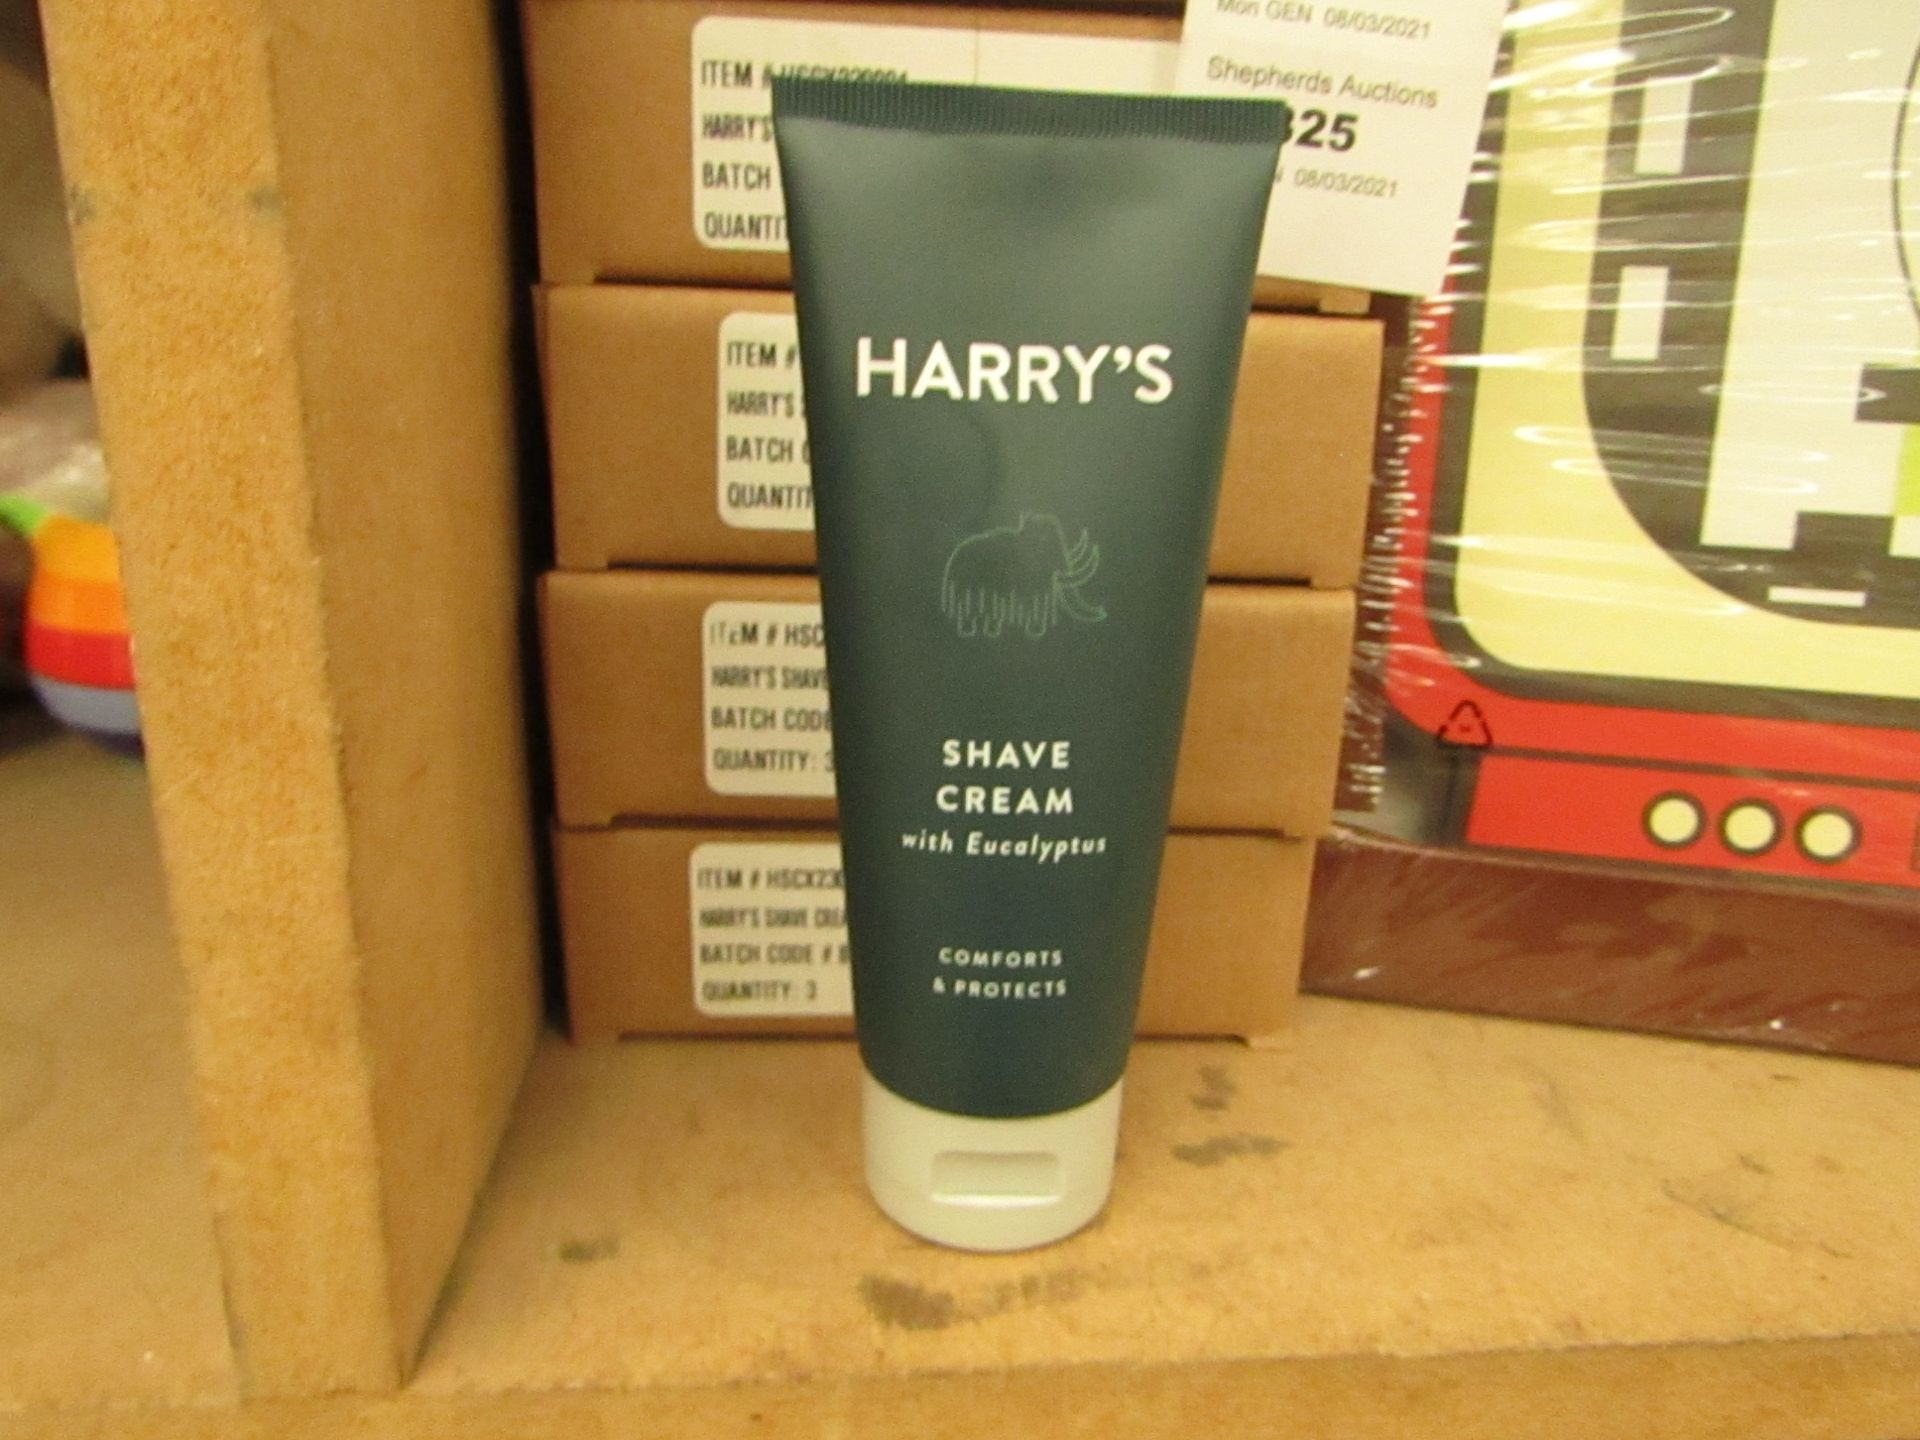 3x Harry's - Shave Cream with Eucalyptus 100ml - Unused & Boxed.